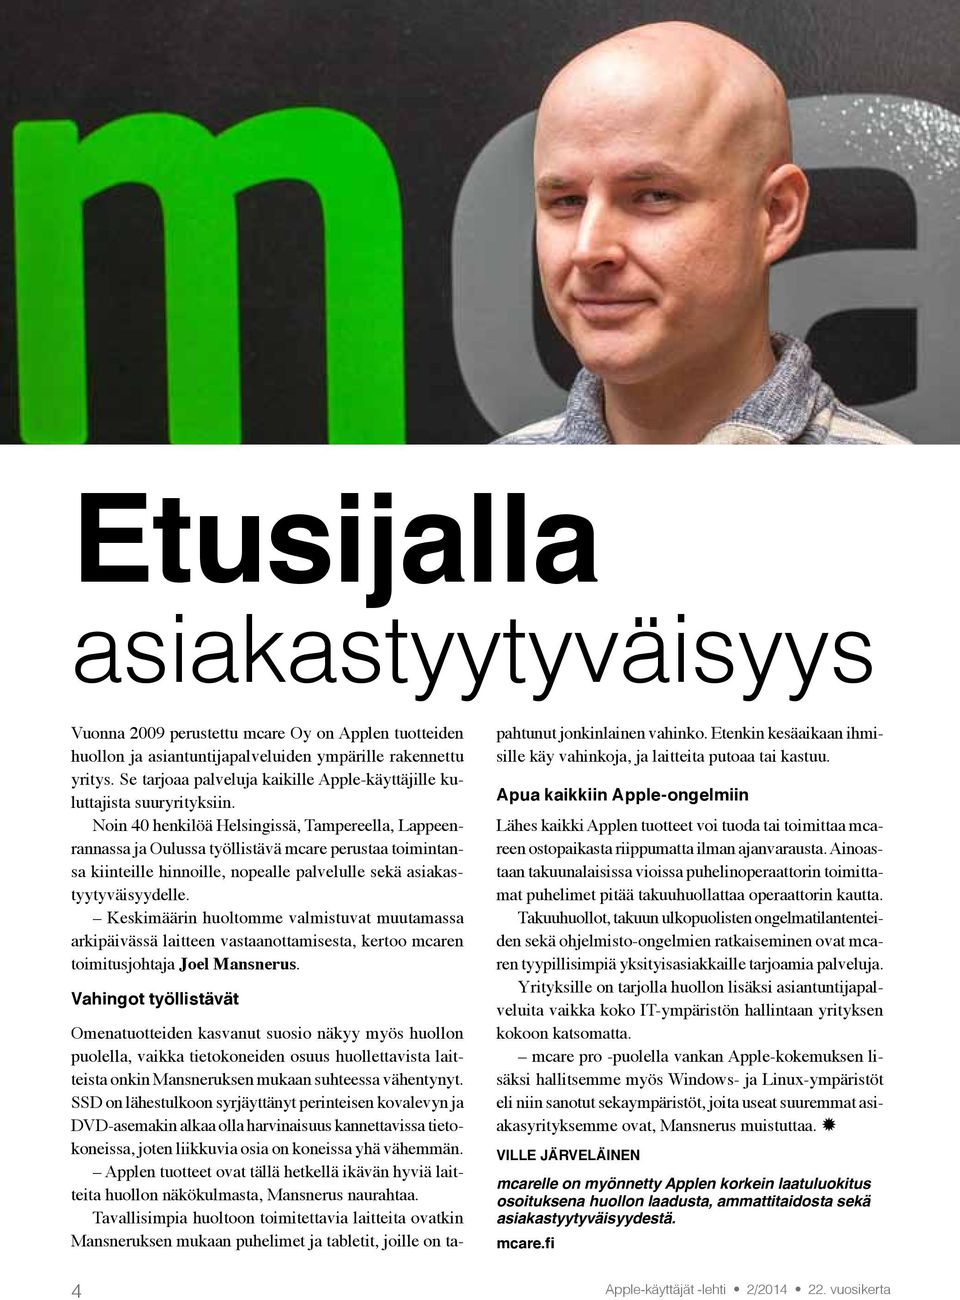 Noin 40 henkilöä Helsingissä, Tampereella, Lappeenrannassa ja Oulussa työllistävä mcare perustaa toimintansa kiinteille hinnoille, nopealle palvelulle sekä asiakastyytyväisyydelle.